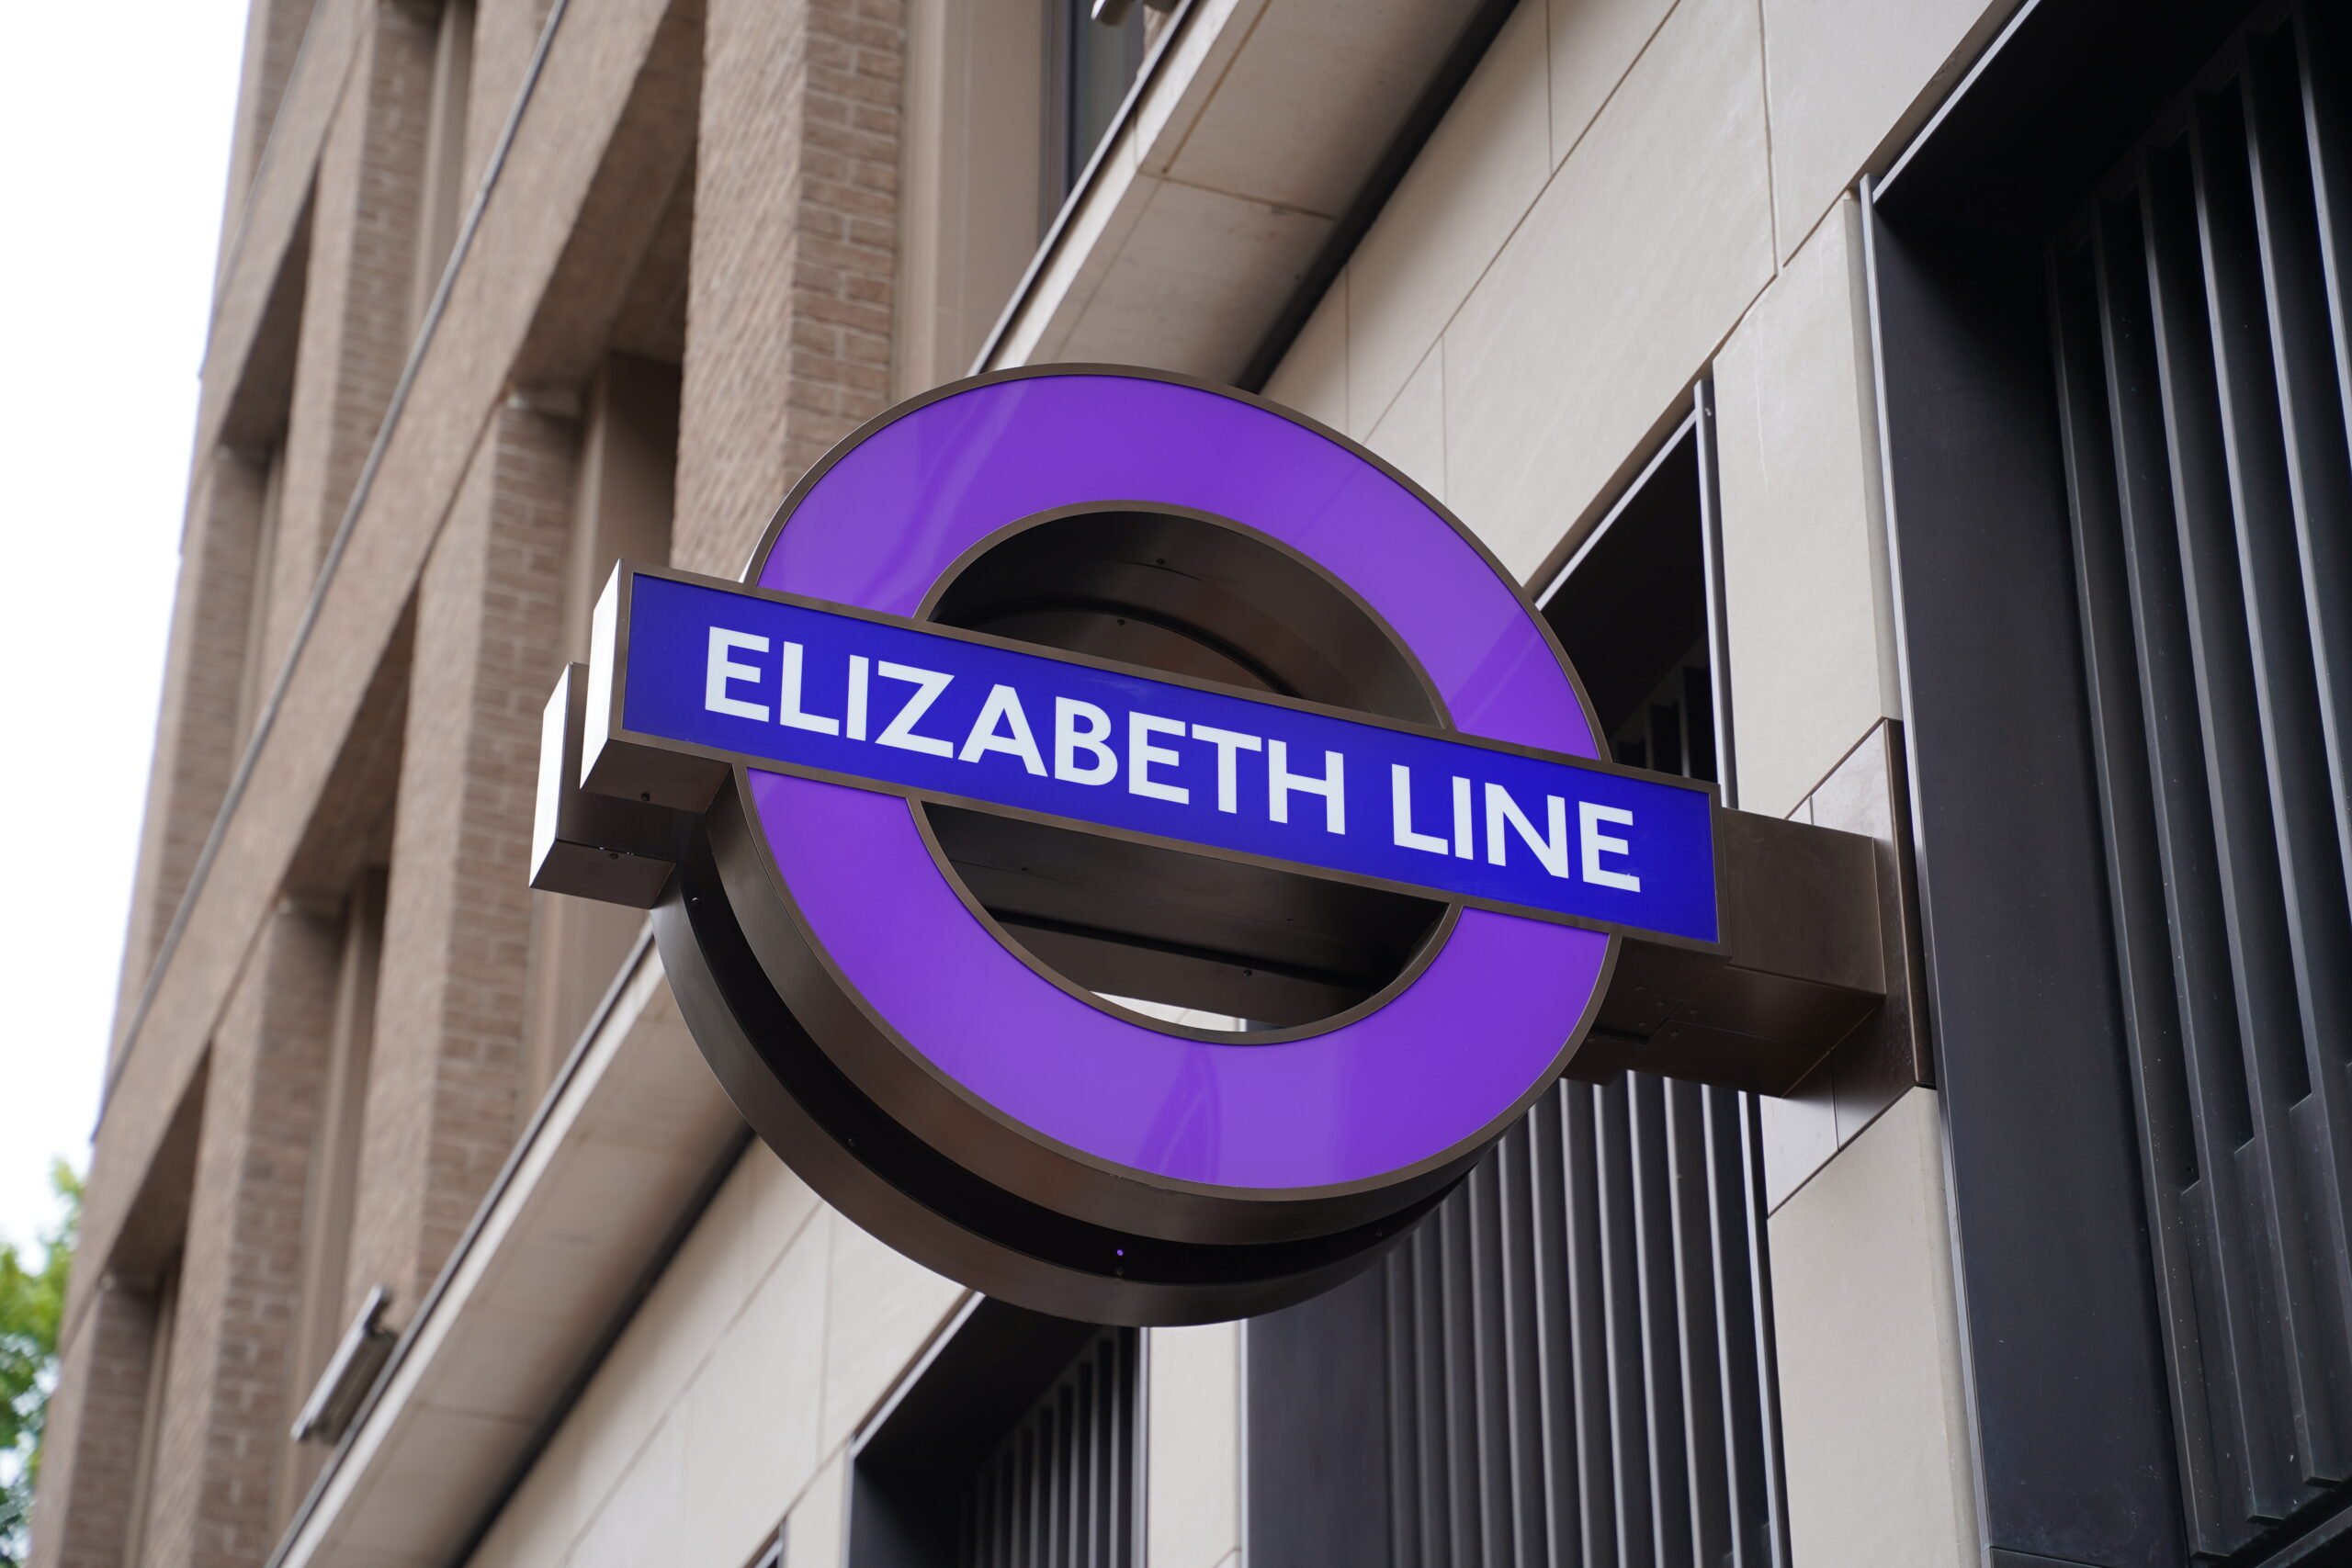 Bond Street Elizabeth line station to open on 24 October